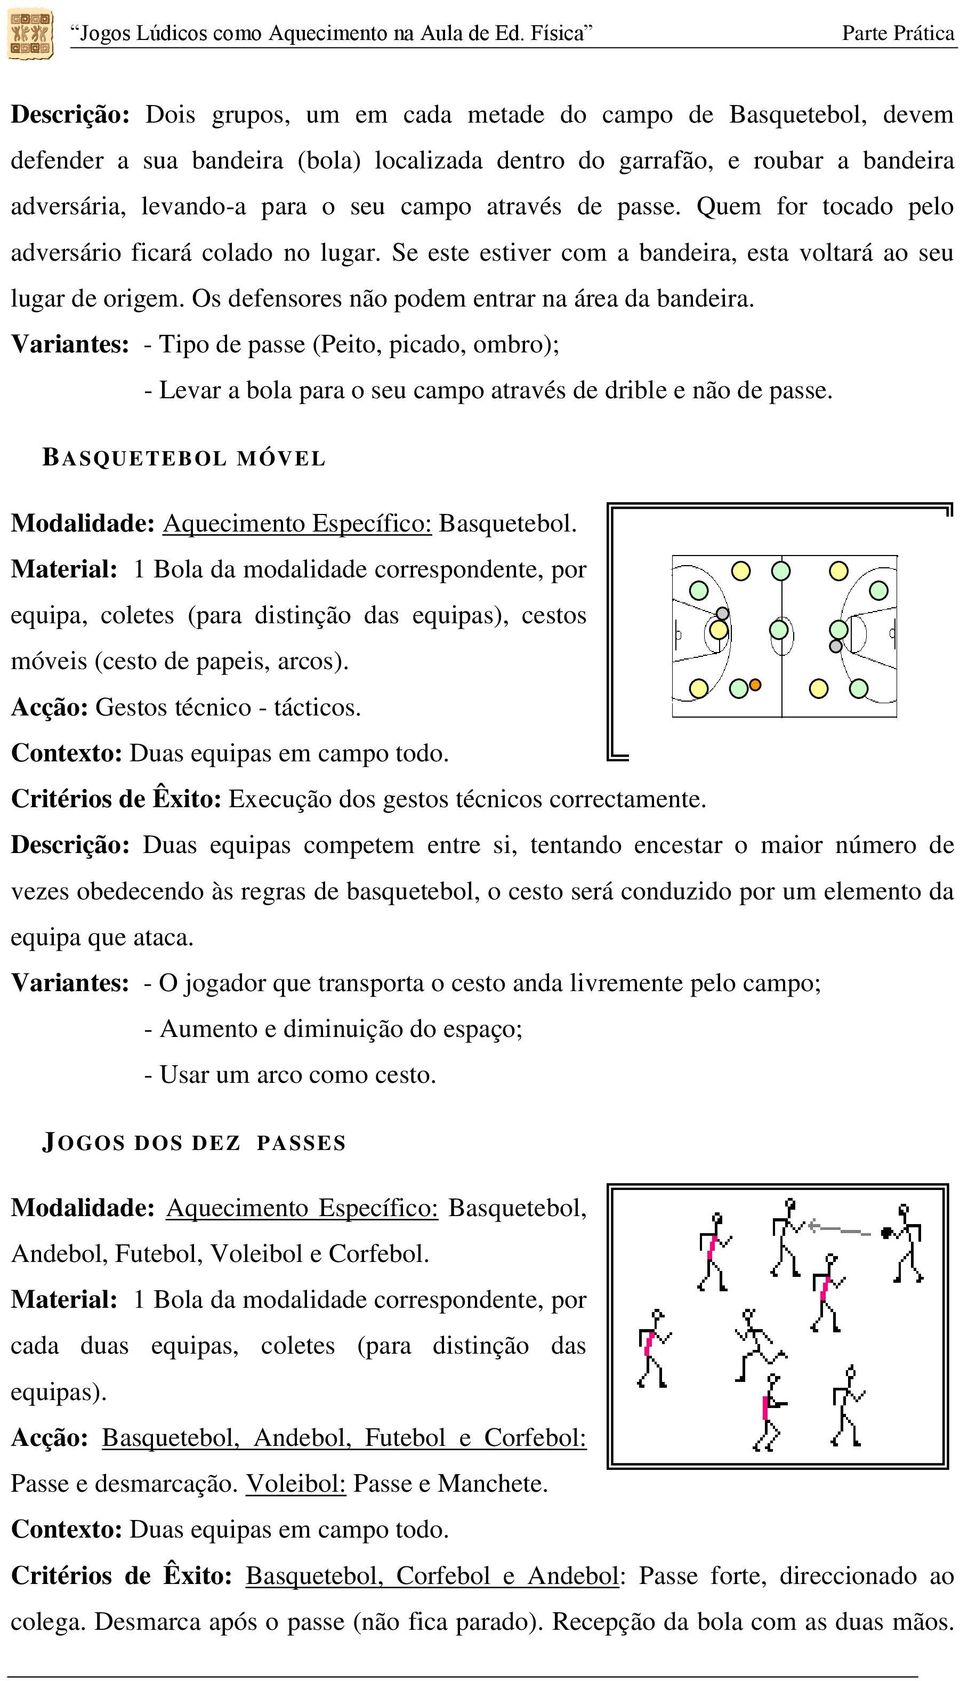 Jogos Lúdicos como Aquecimento na Aula de Ed. Física - PDF Free Download